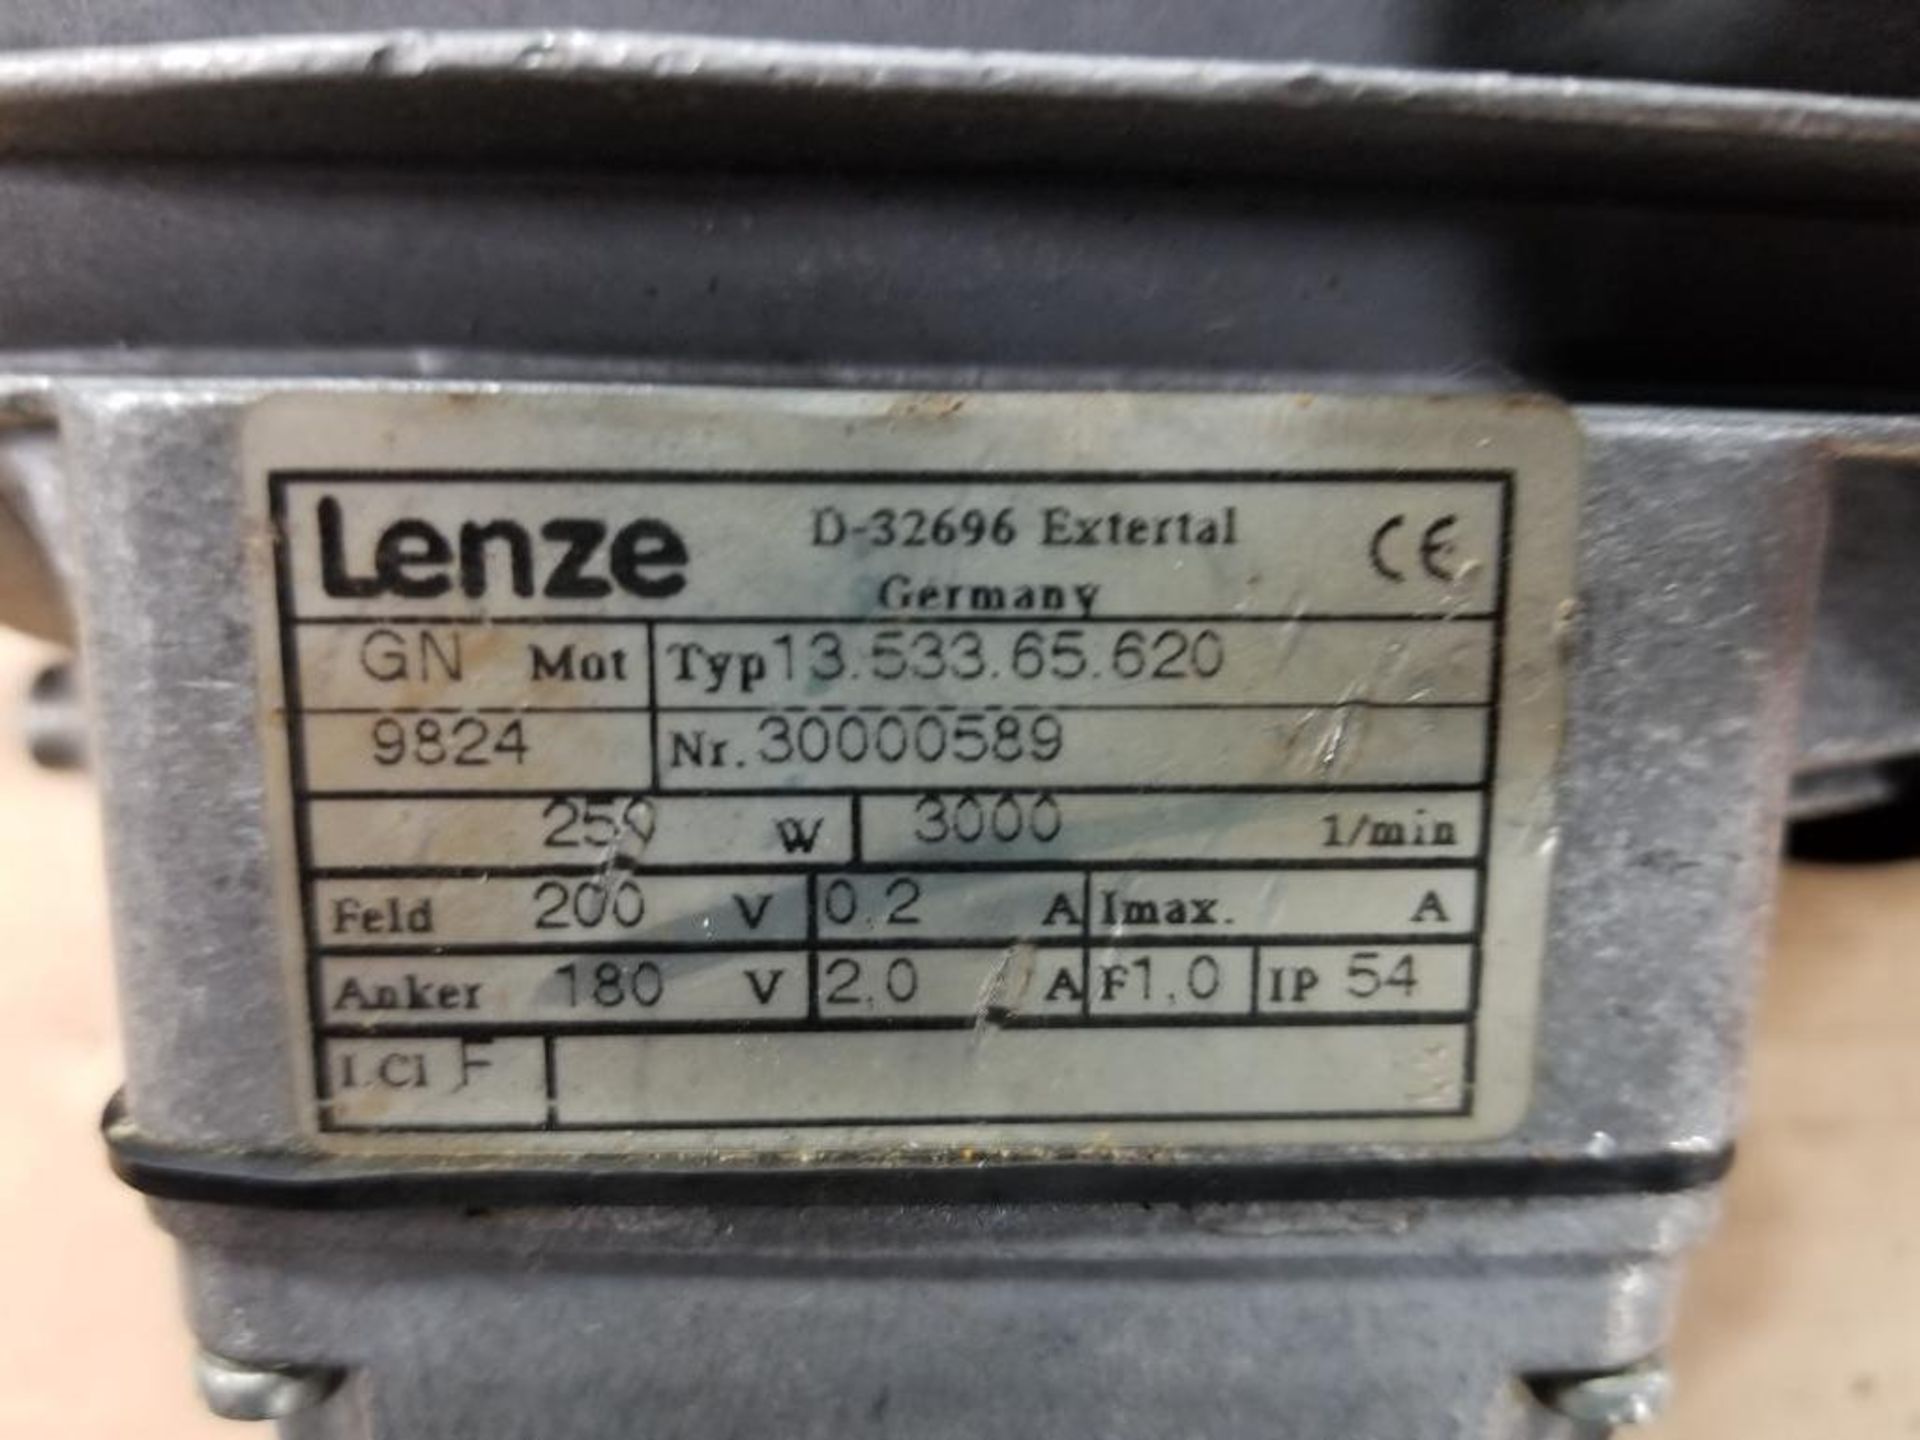 Lenze motor. Model number 13.533.65.620. - Image 2 of 2